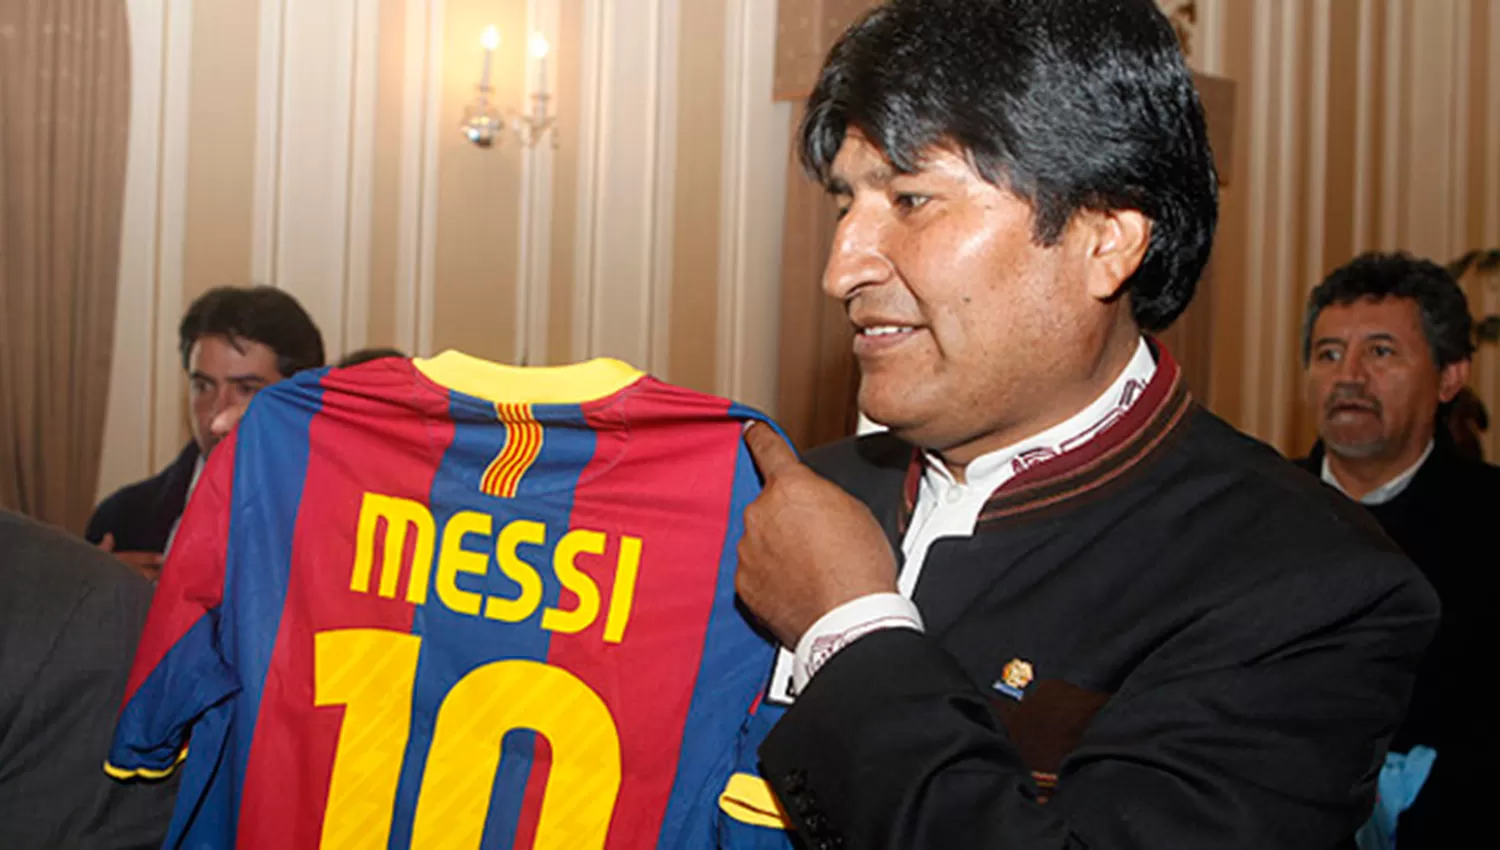 FANÁTICO. Evo Morales con la camiseta de Messi. (ARCHIVO)